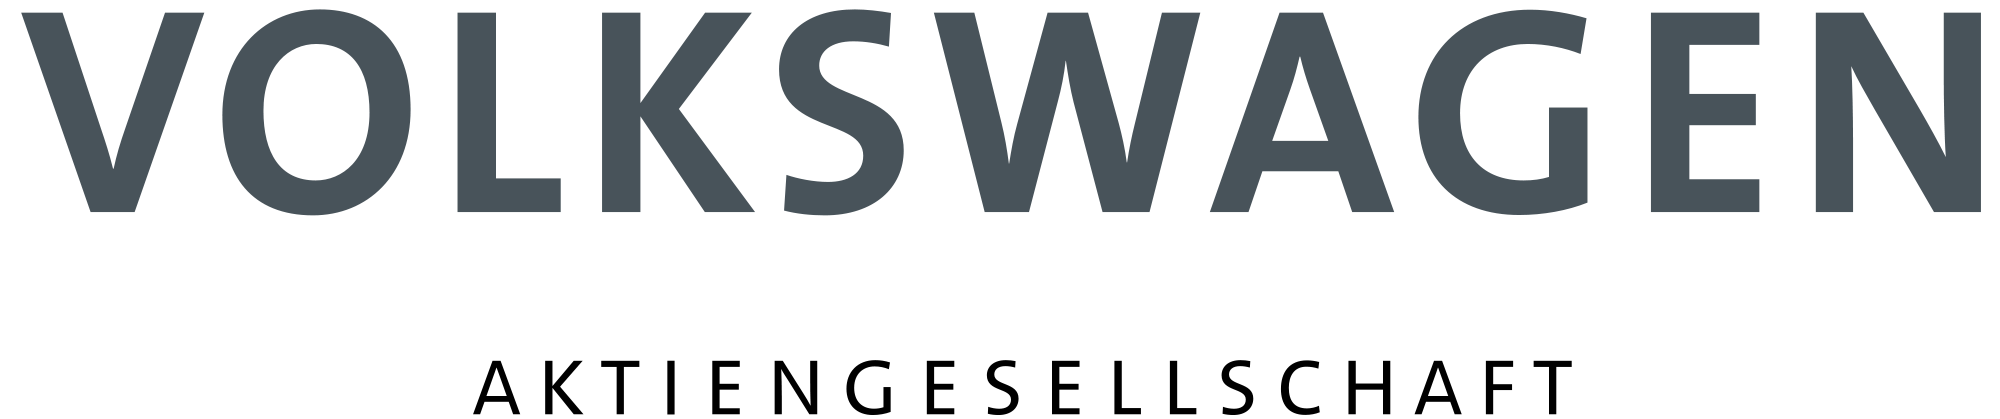 volkswagen group logo peats customer